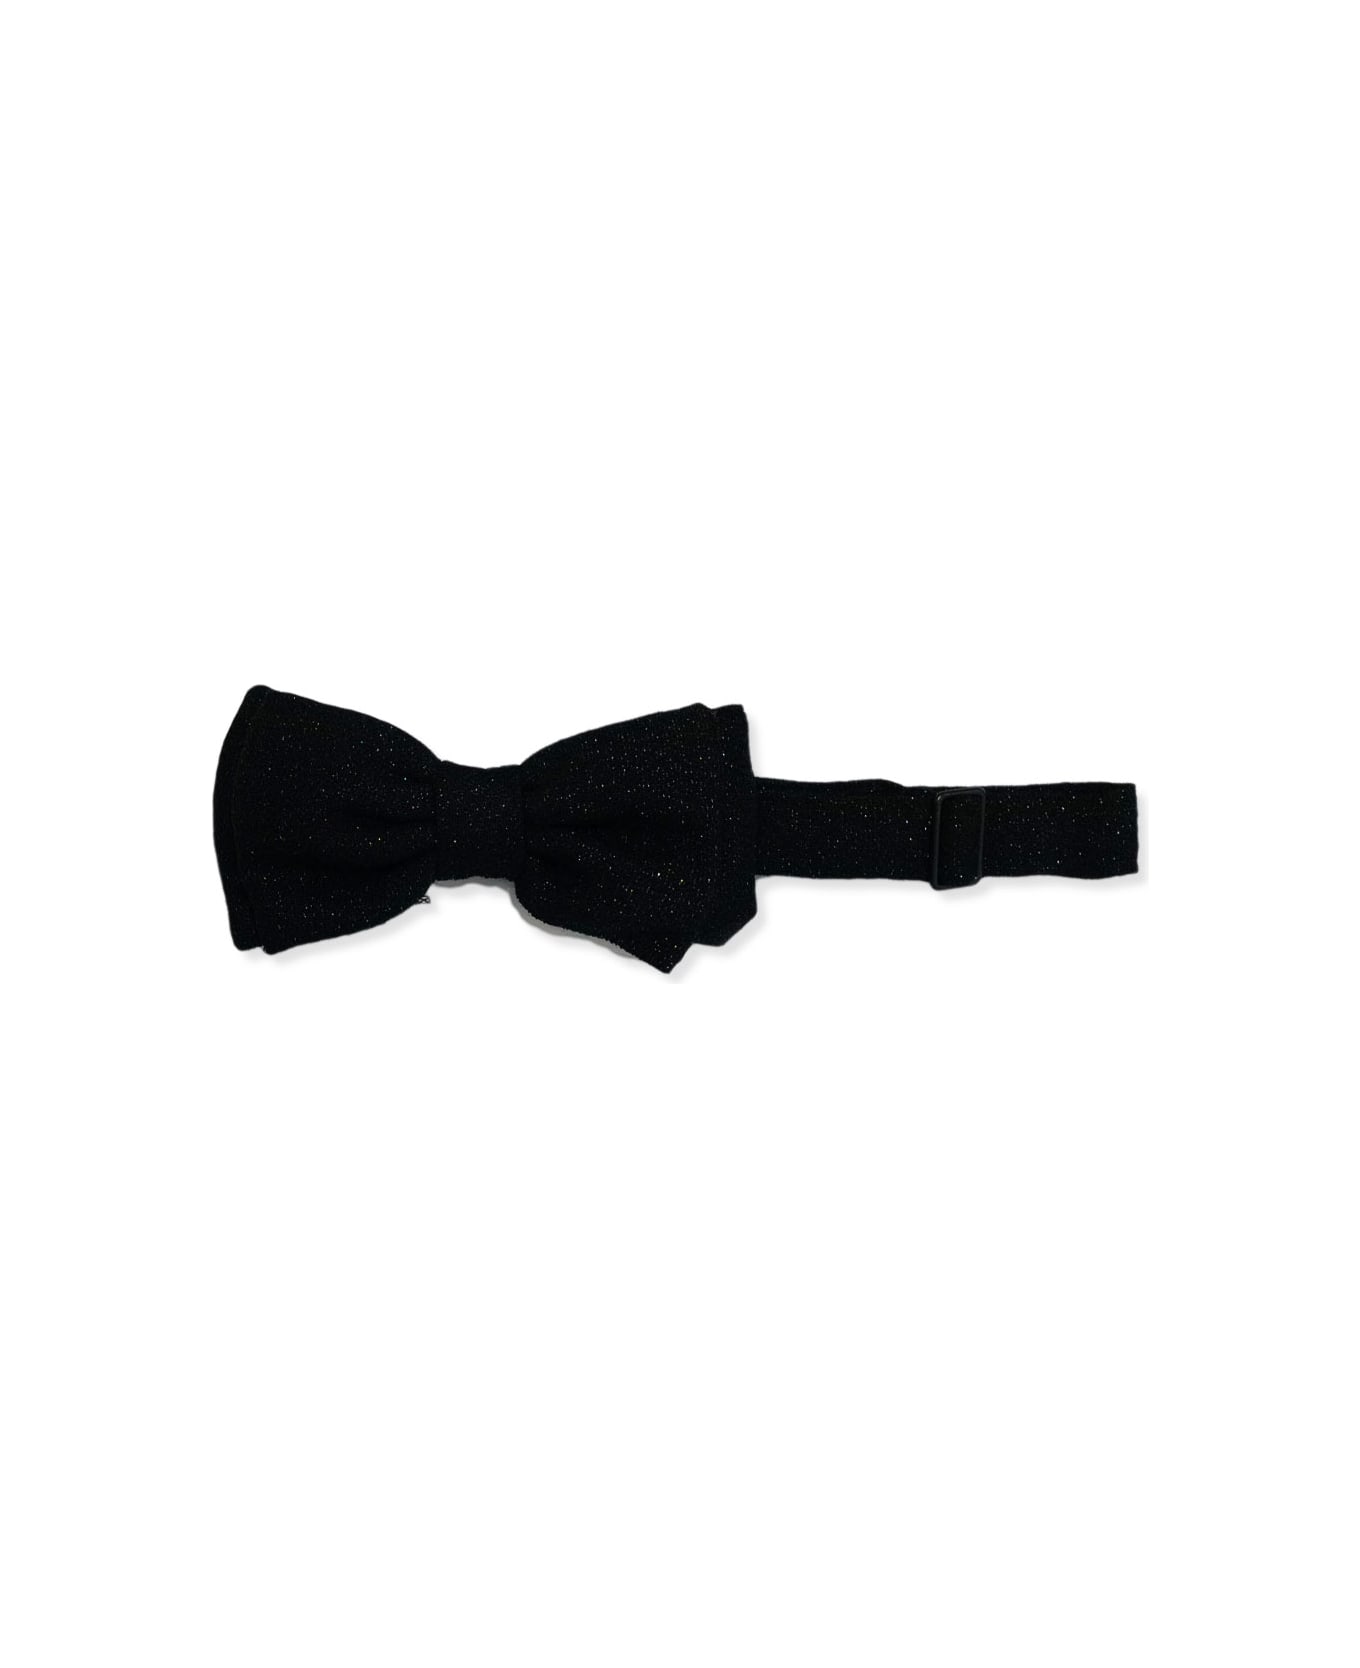 Lardini Bow Tie - Black